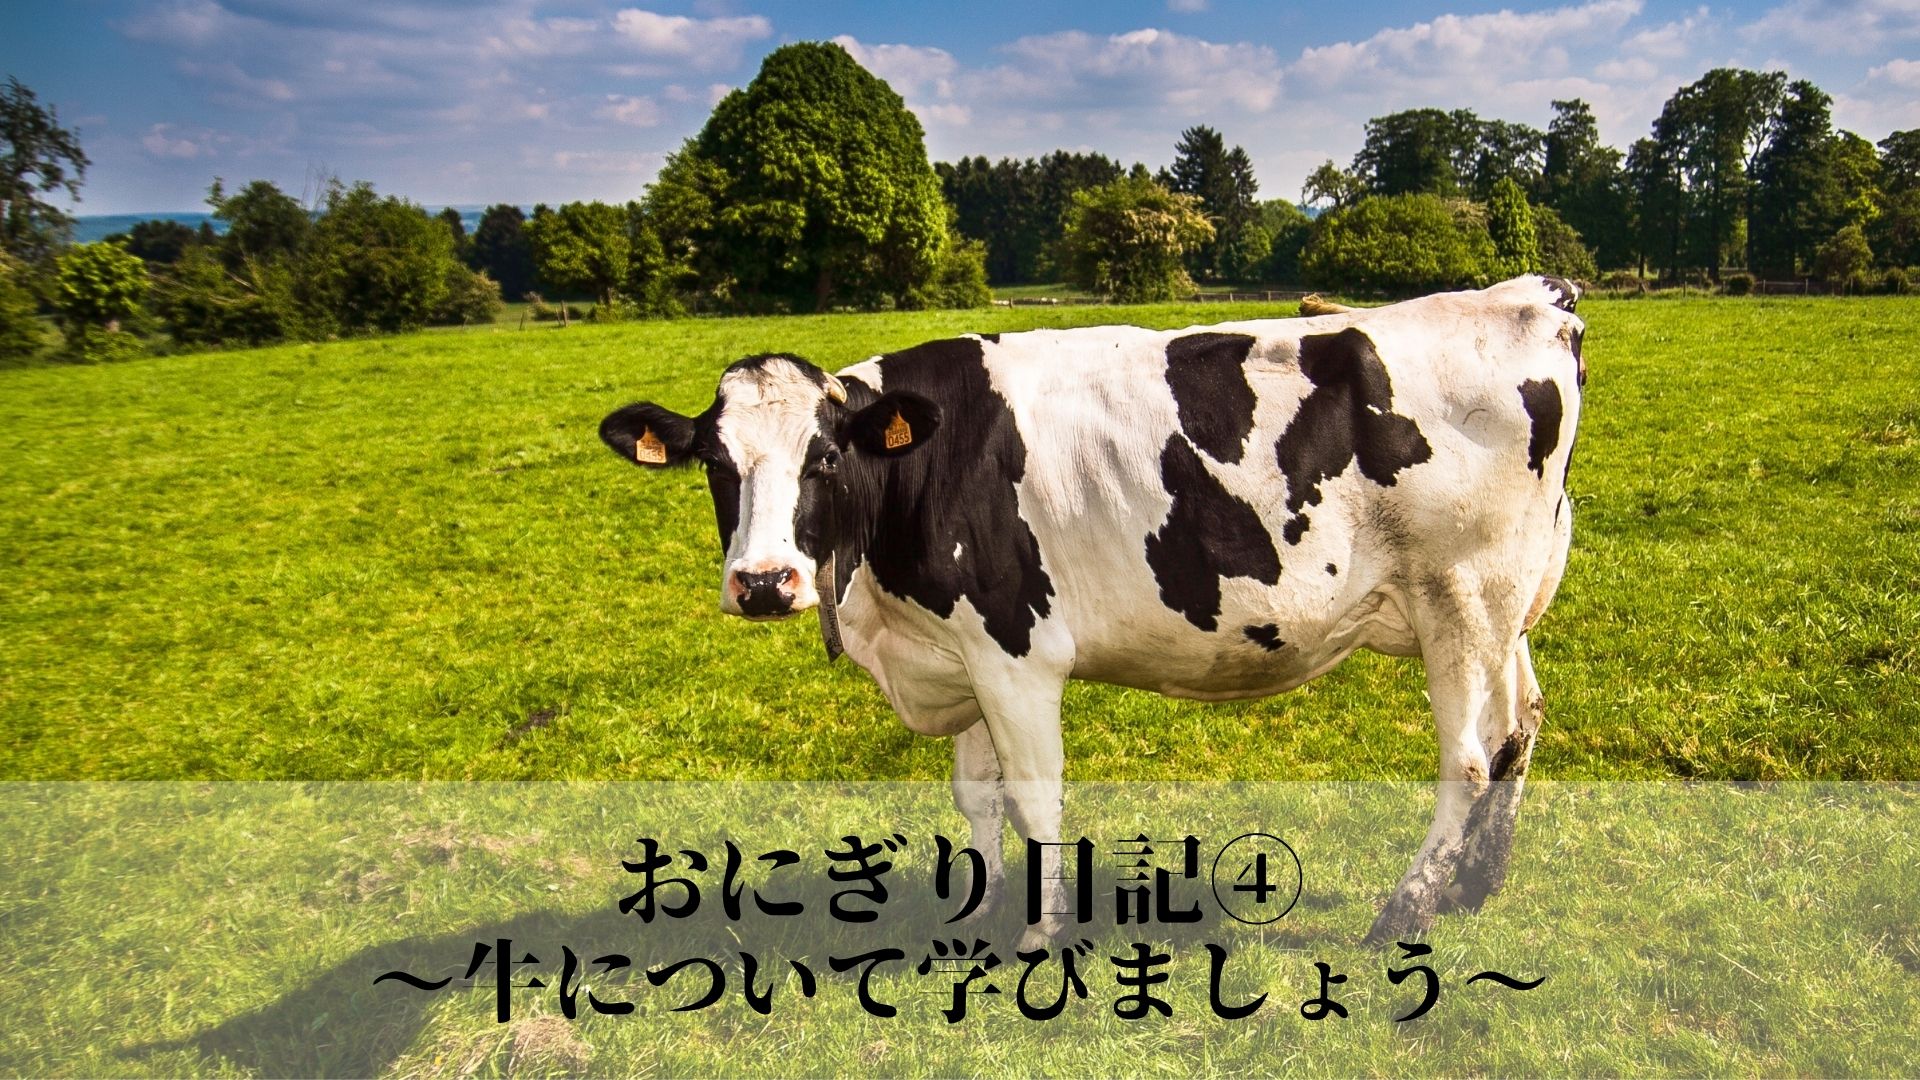 おにぎり日記④〜牛について学びましょう〜